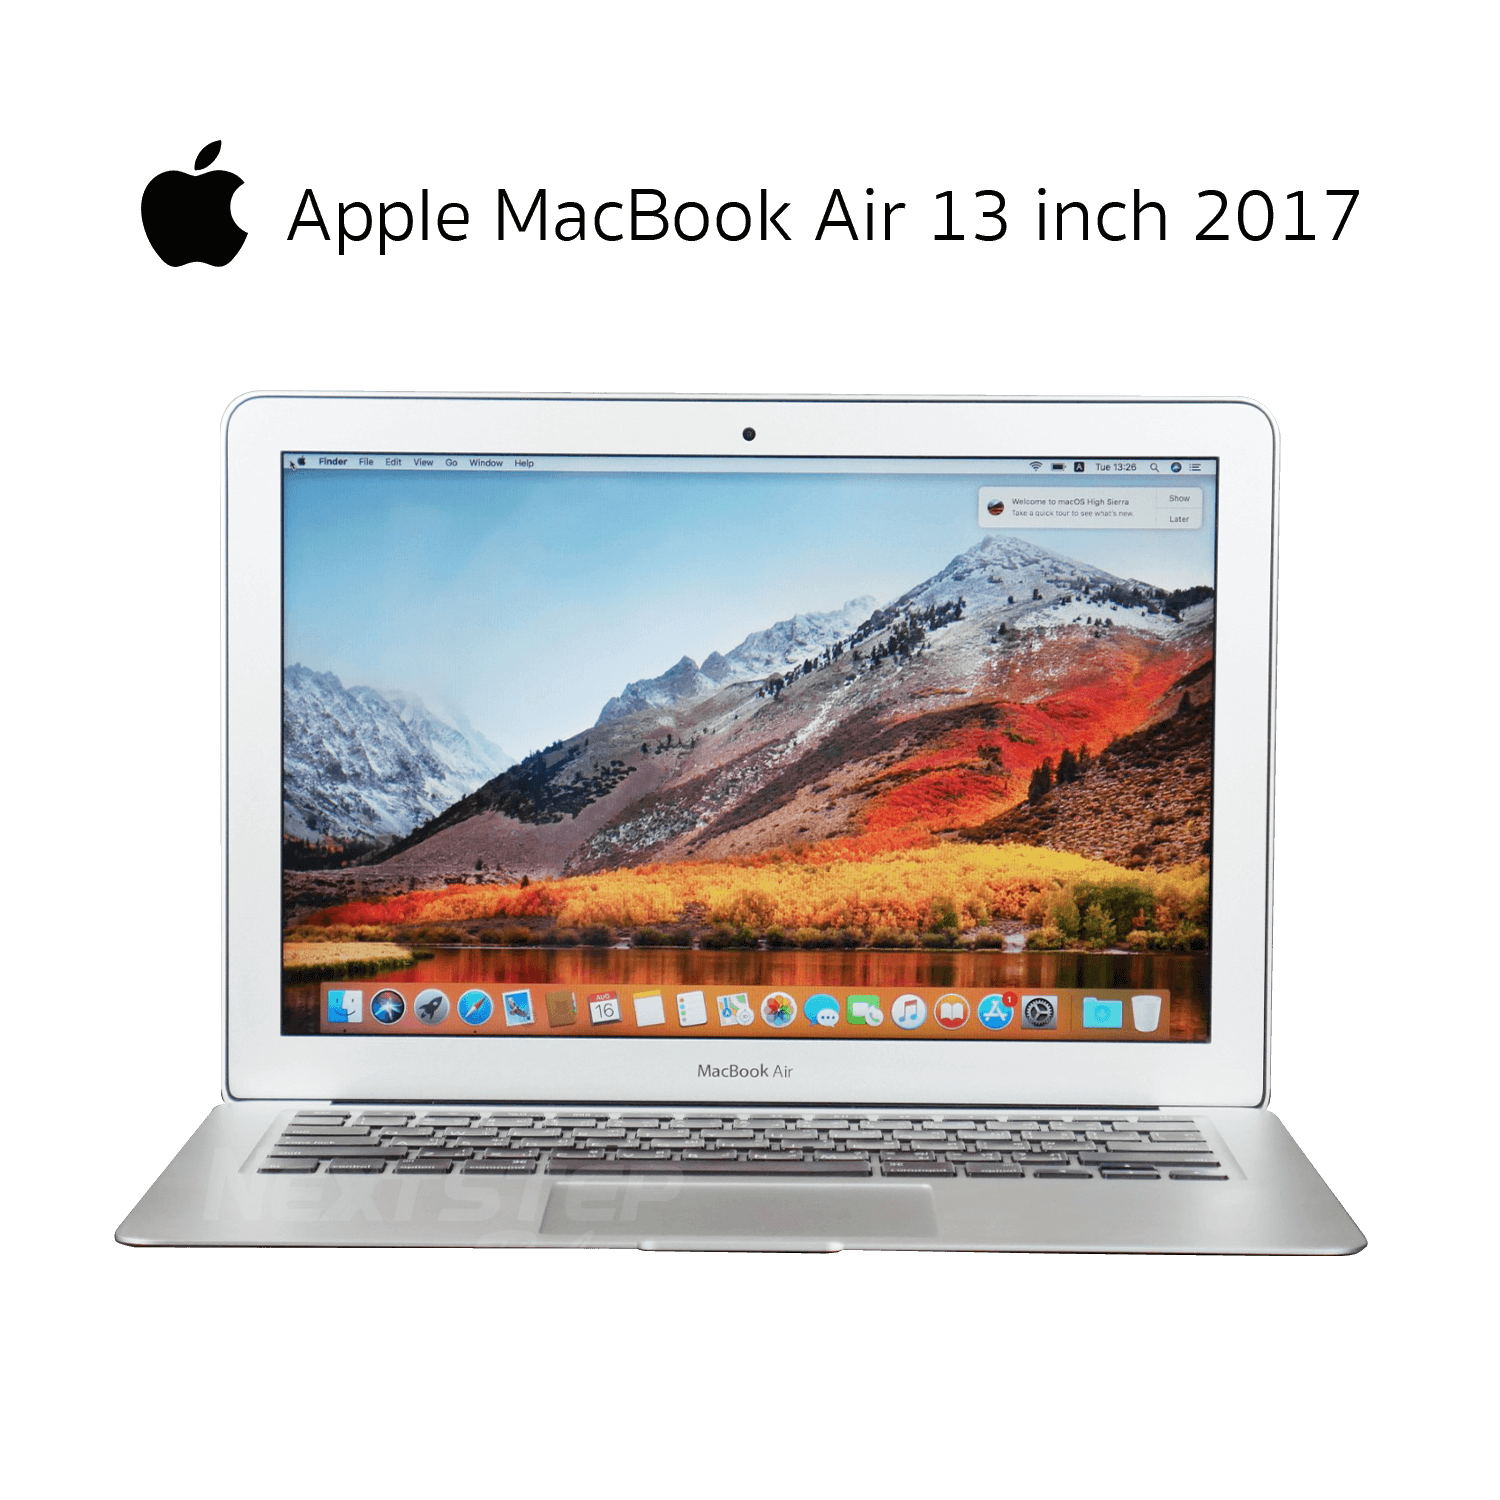 คอมมือสอง) Apple MacBook Air 13 2017 Core i5 Ram 8GB SSD 256GB Intel HD  6000 Display 13.3 inch | NextStep Reborn คอมประกอบ ของใหม่ คอมแบรนด์  คอมมือสอง คุณภาพดี ราคาถูก มีรับประกัน